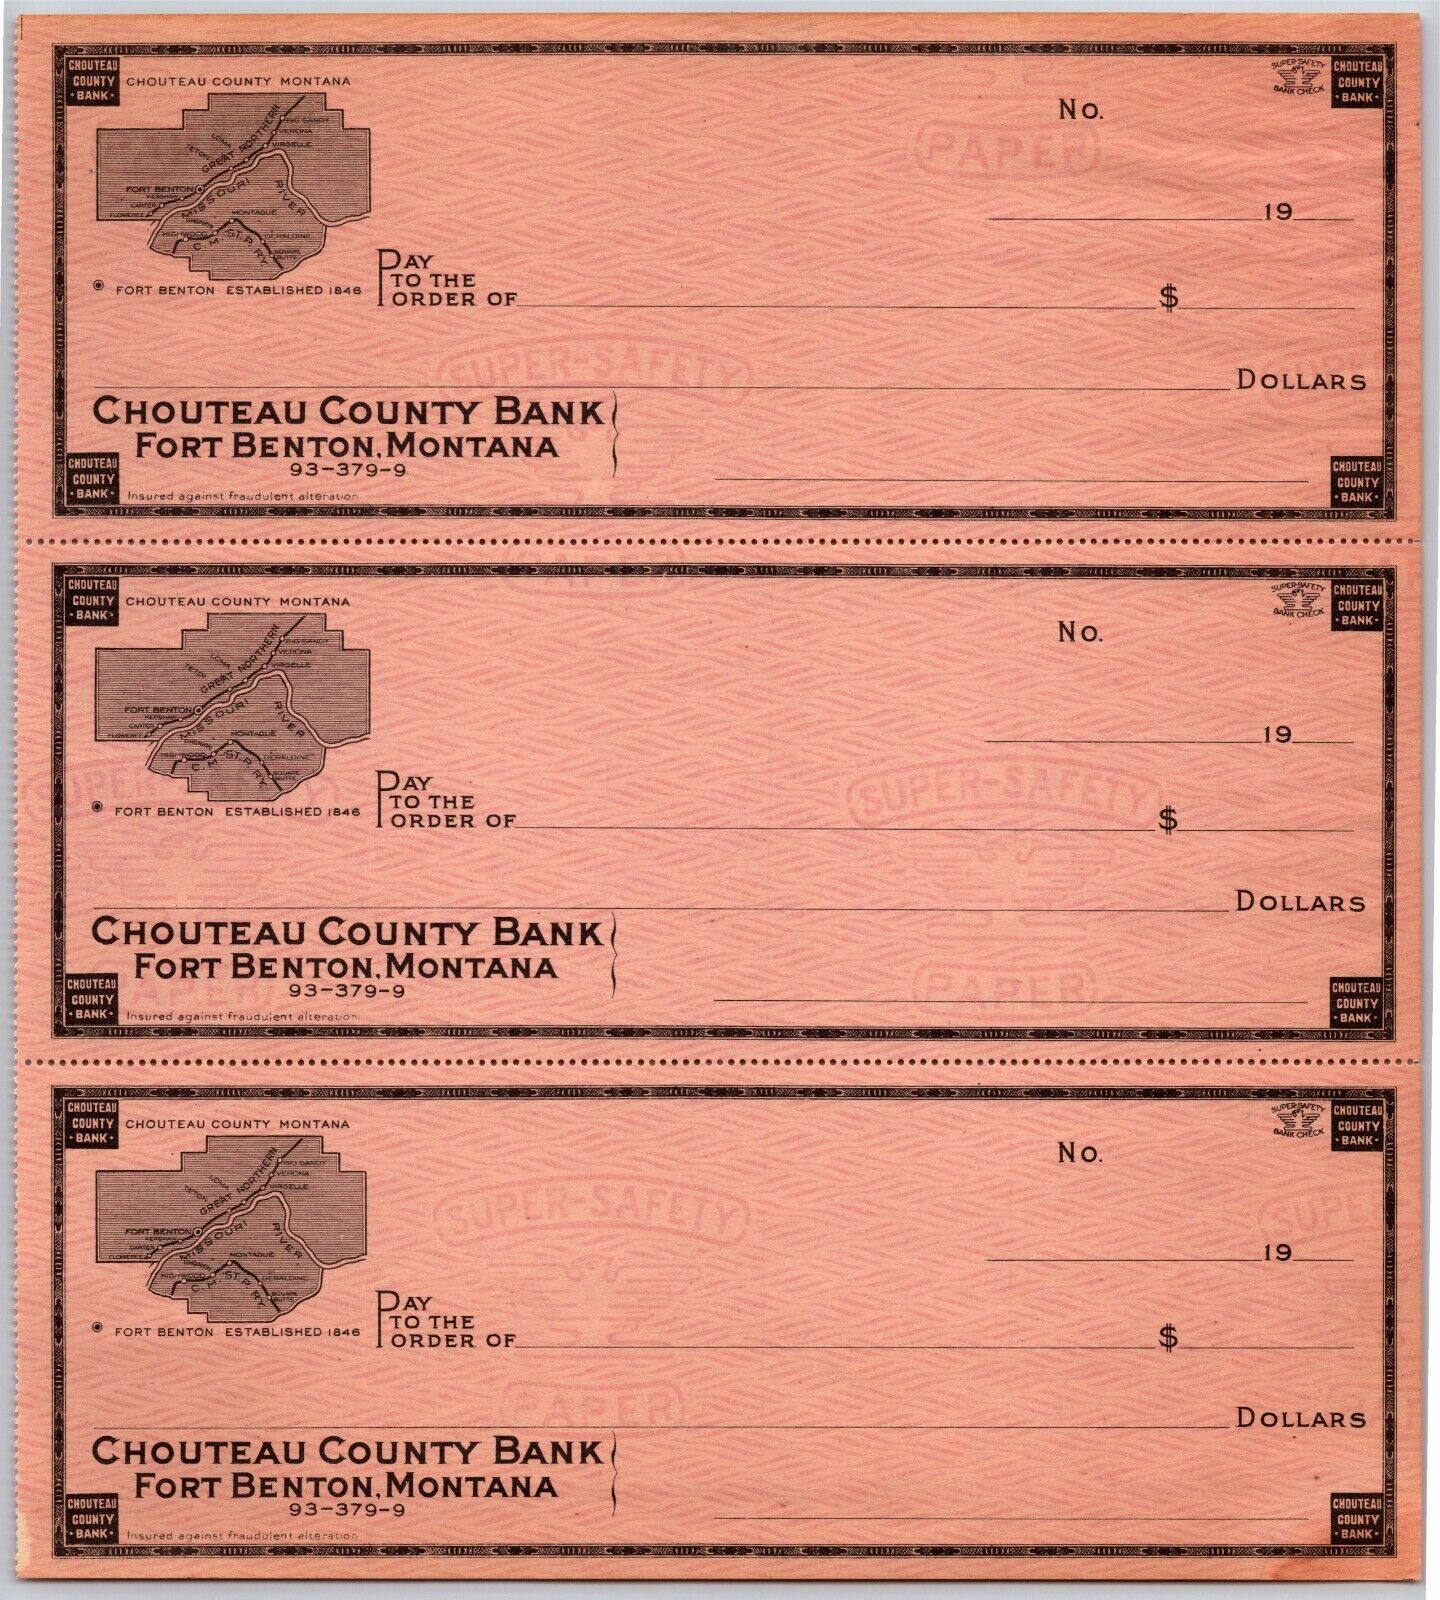 Fort Benton, Montana Chouteau County Bank Check Sheet c1920\'s-30\'s  w/ Map